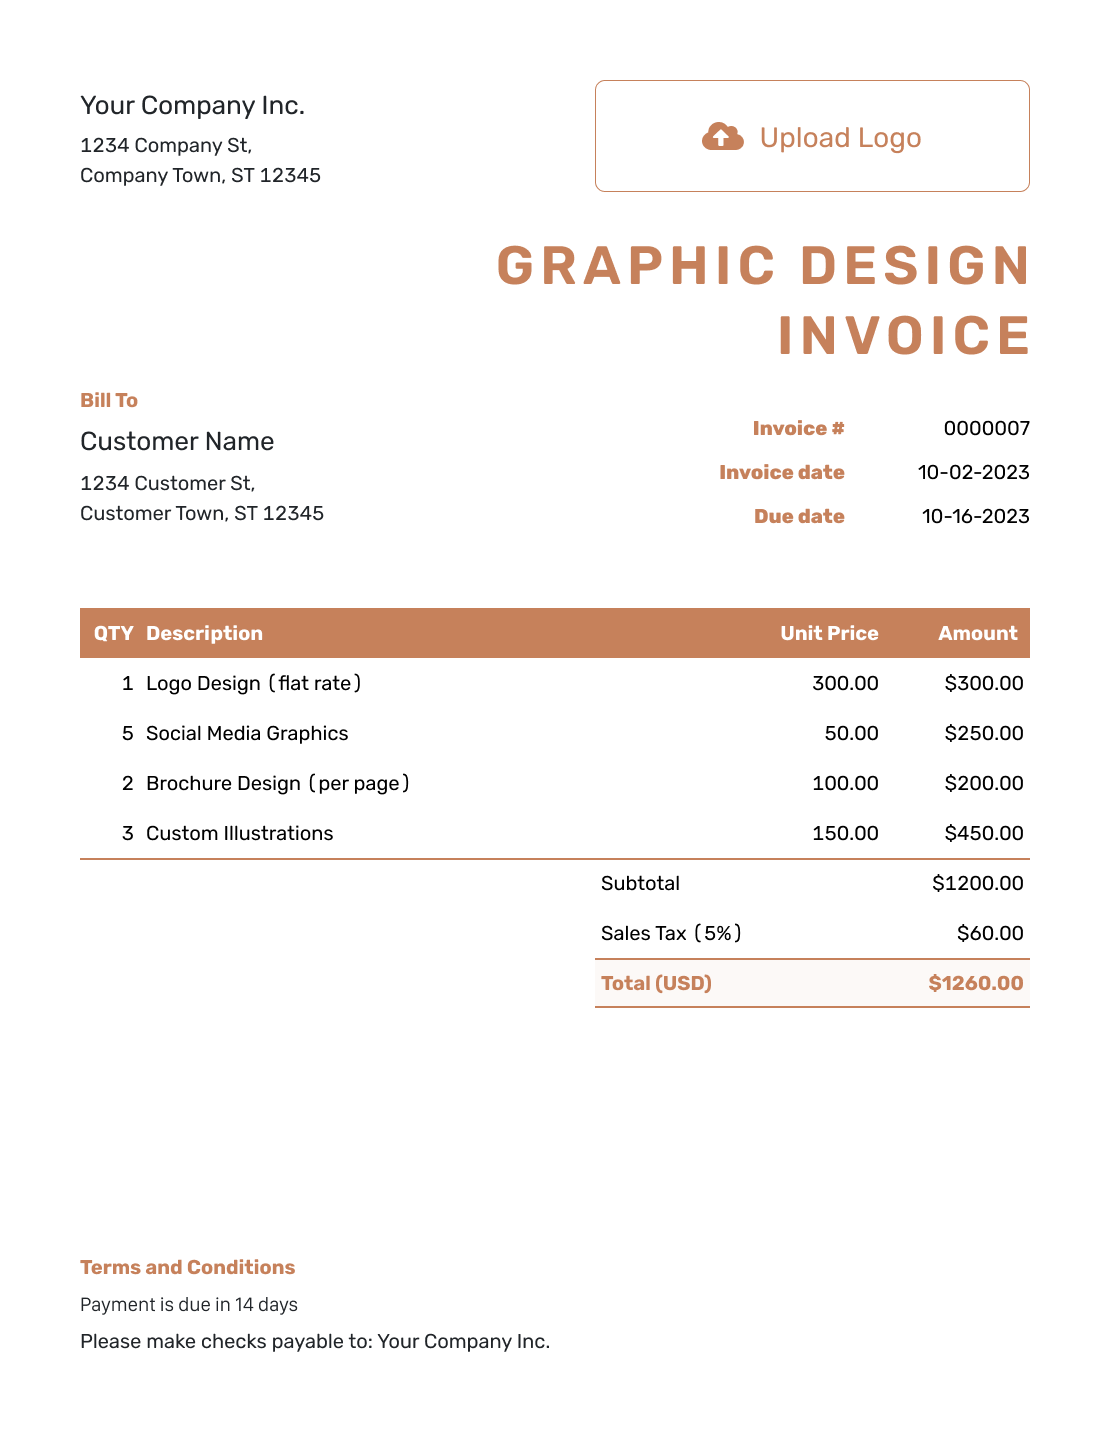 Standard Graphic Design Invoice Template